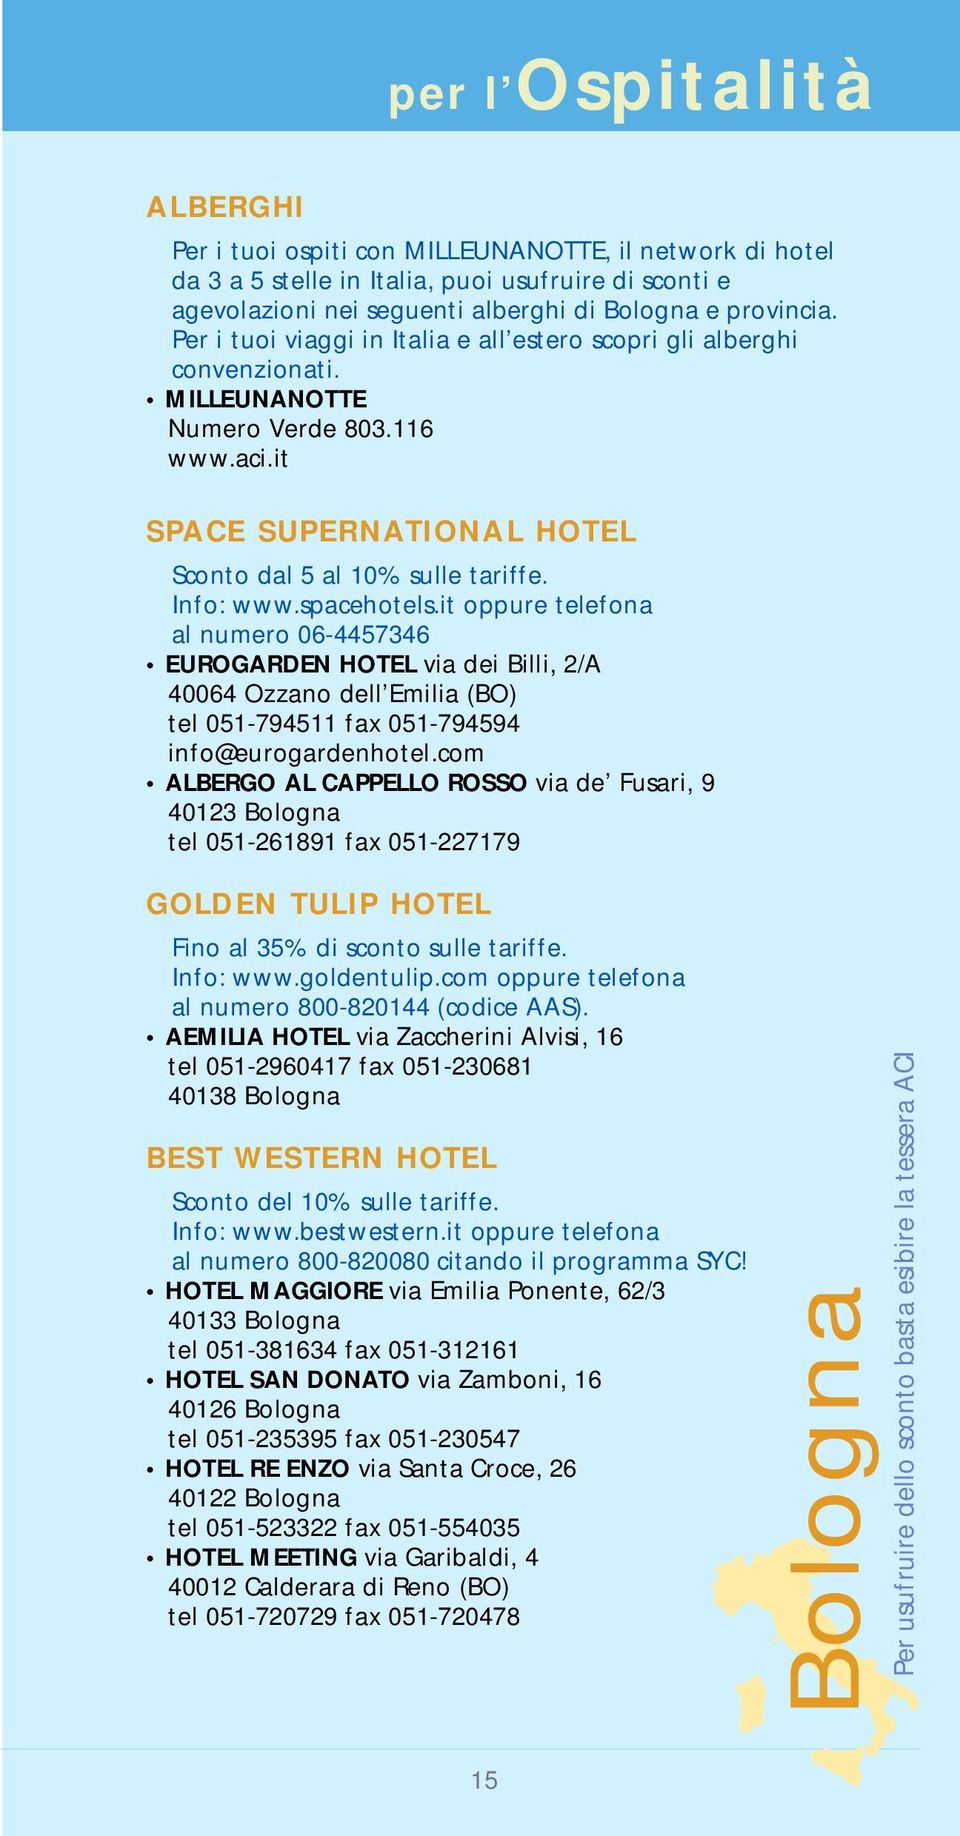 spacehotels.it oppure telefona al numero 06-4457346 EUROGARDEN HOTEL via dei Billi, 2/A 40064 Ozzano dell Emilia (BO) tel 051-794511 fax 051-794594 info@eurogardenhotel.